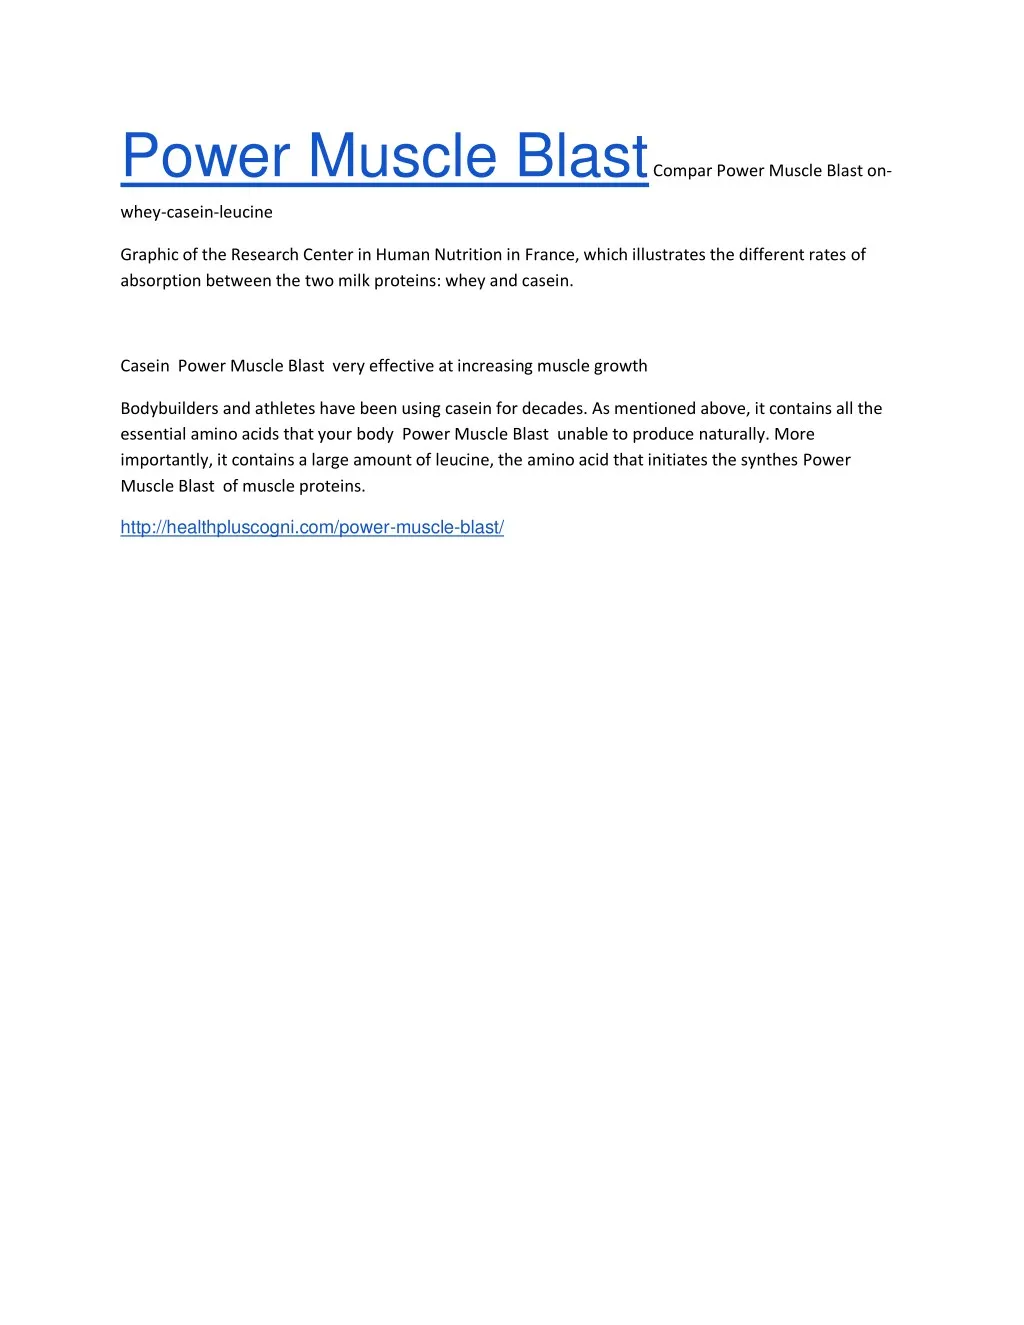 power muscle blast compar power muscle blast on